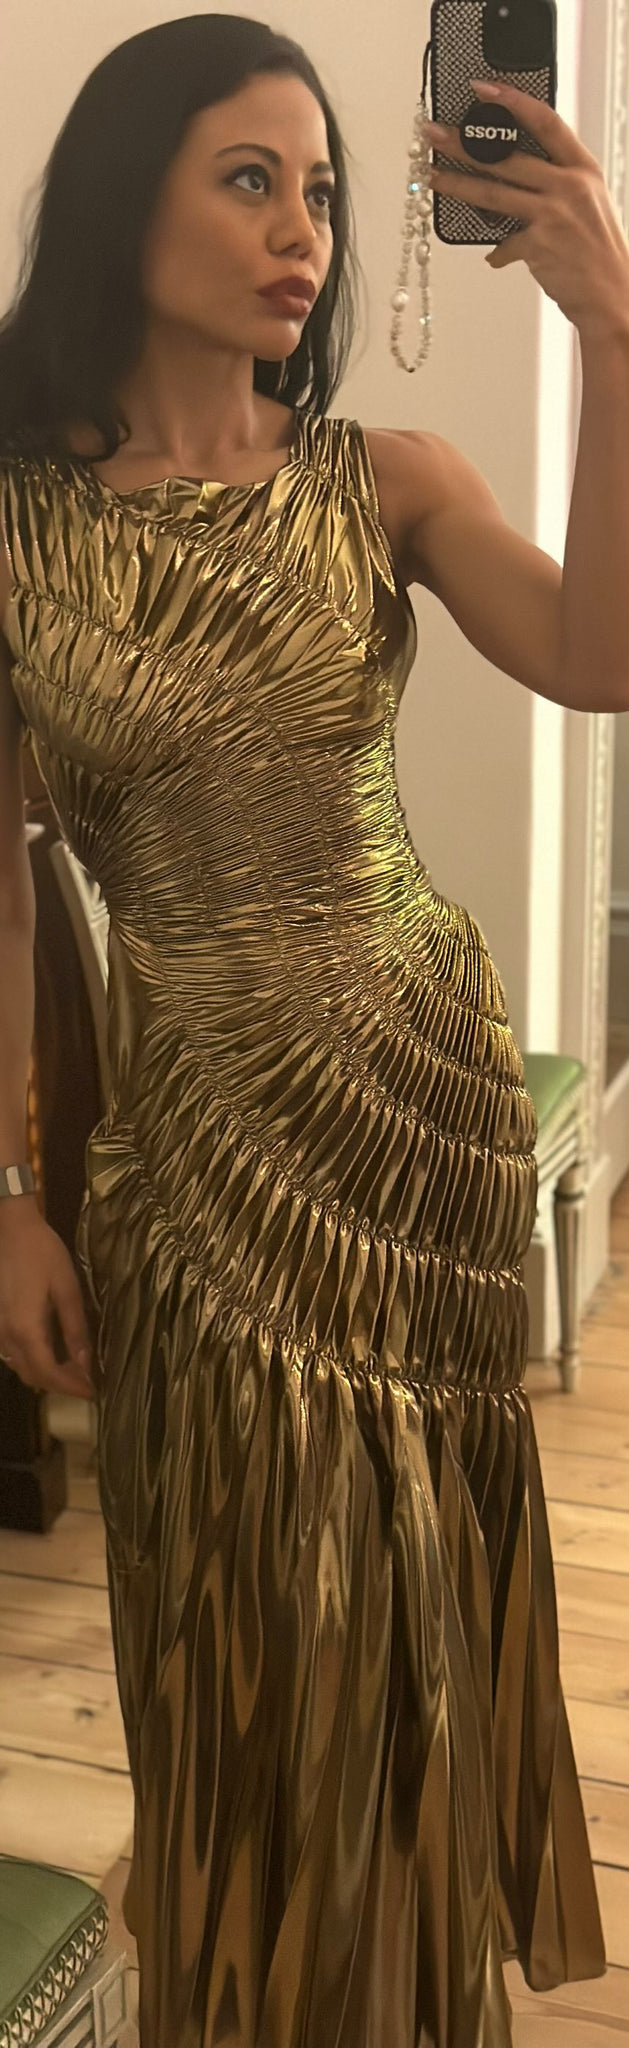 Emma Thynn Fossil Dress in Gold